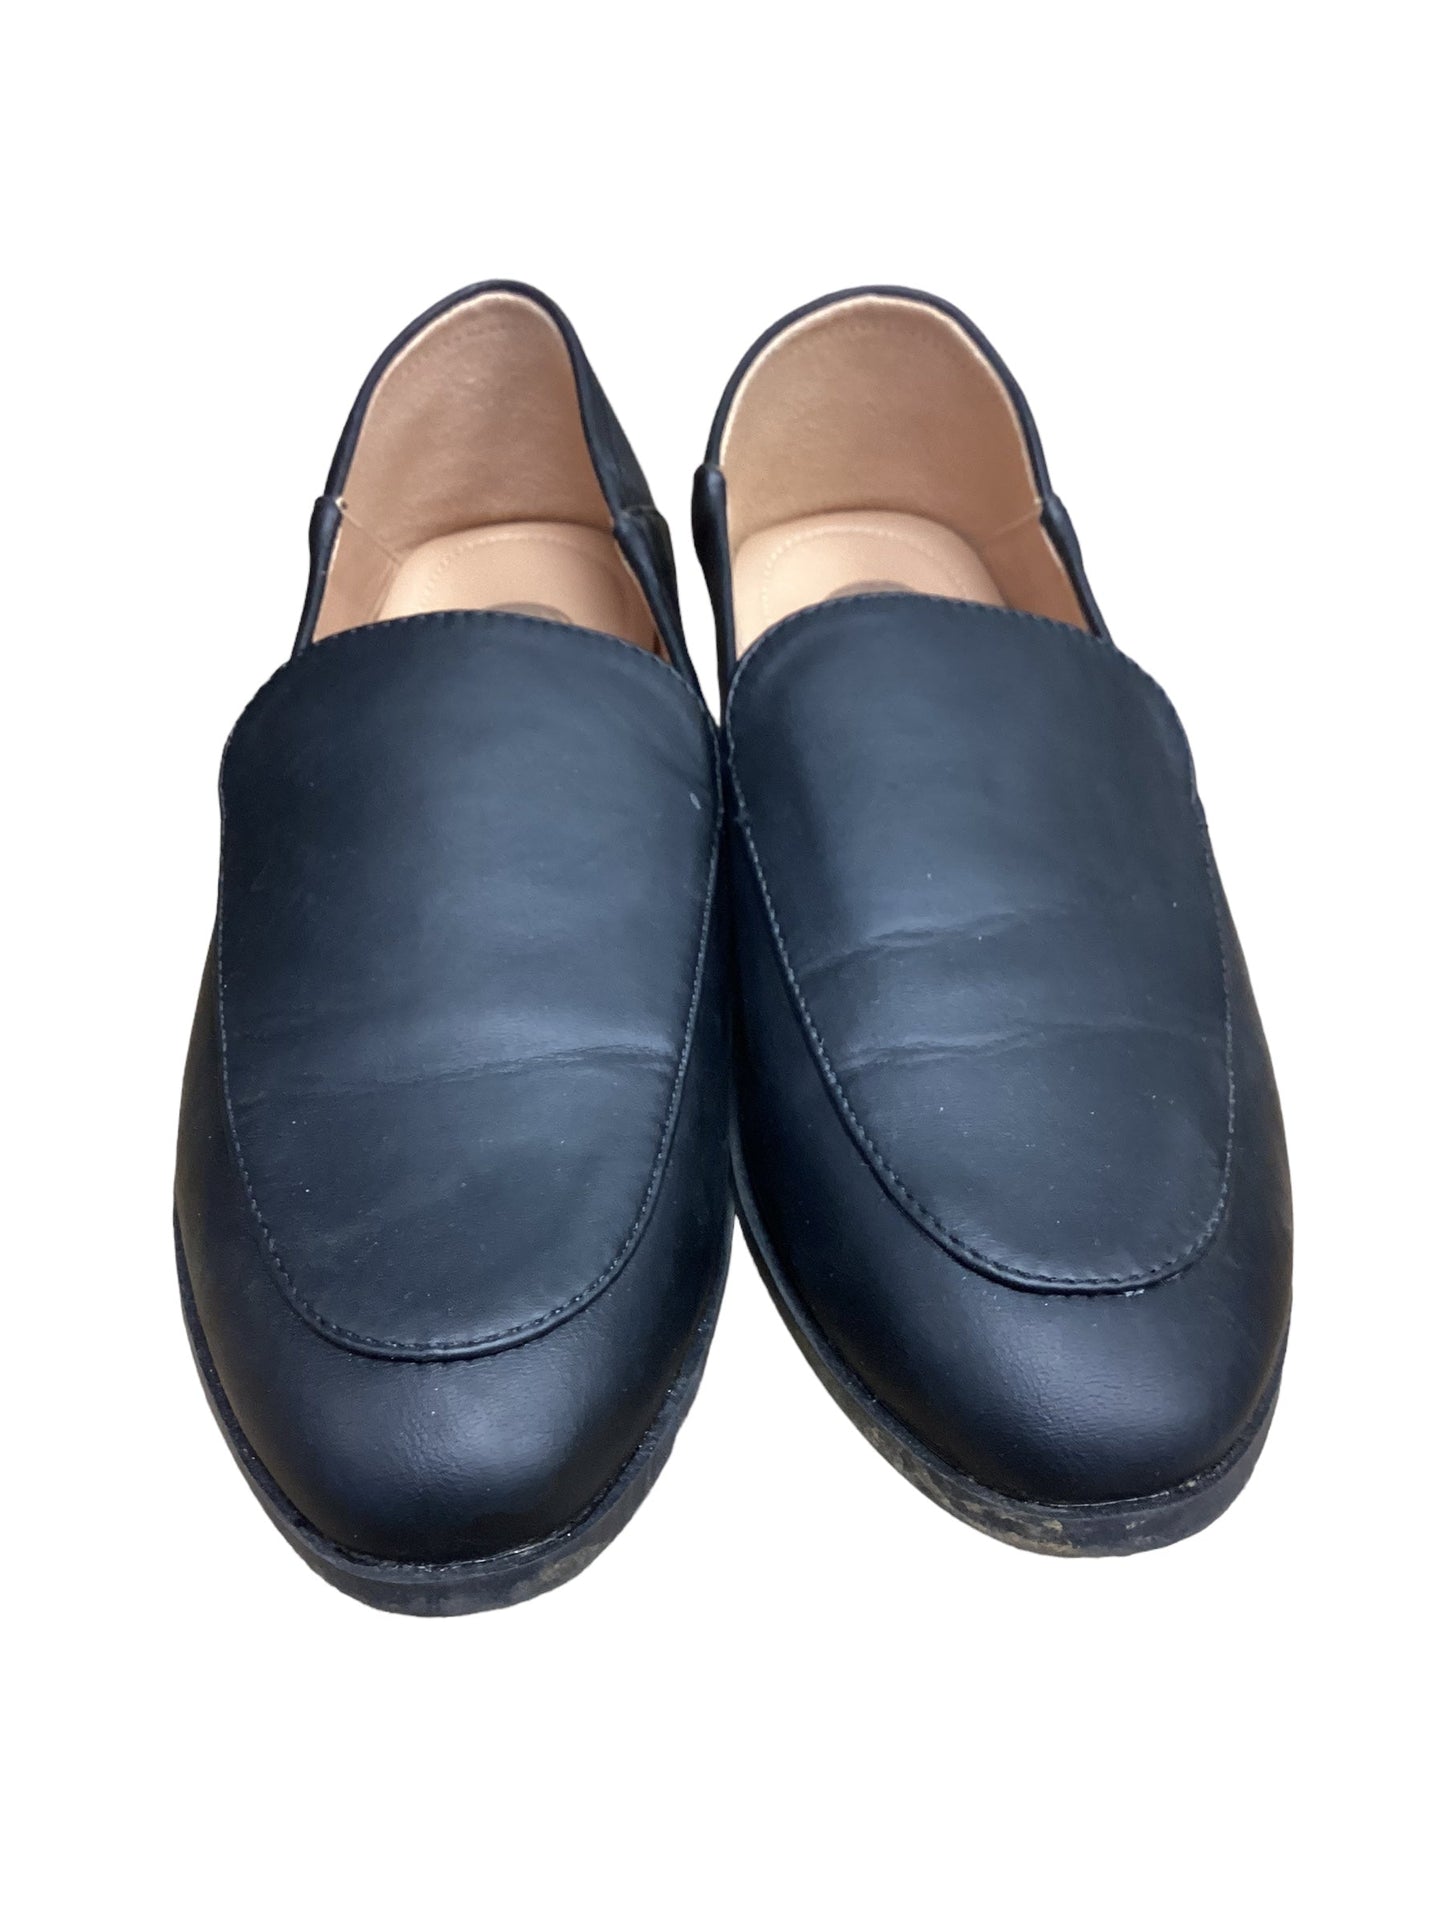 Black Shoes Flats Cme, Size 8